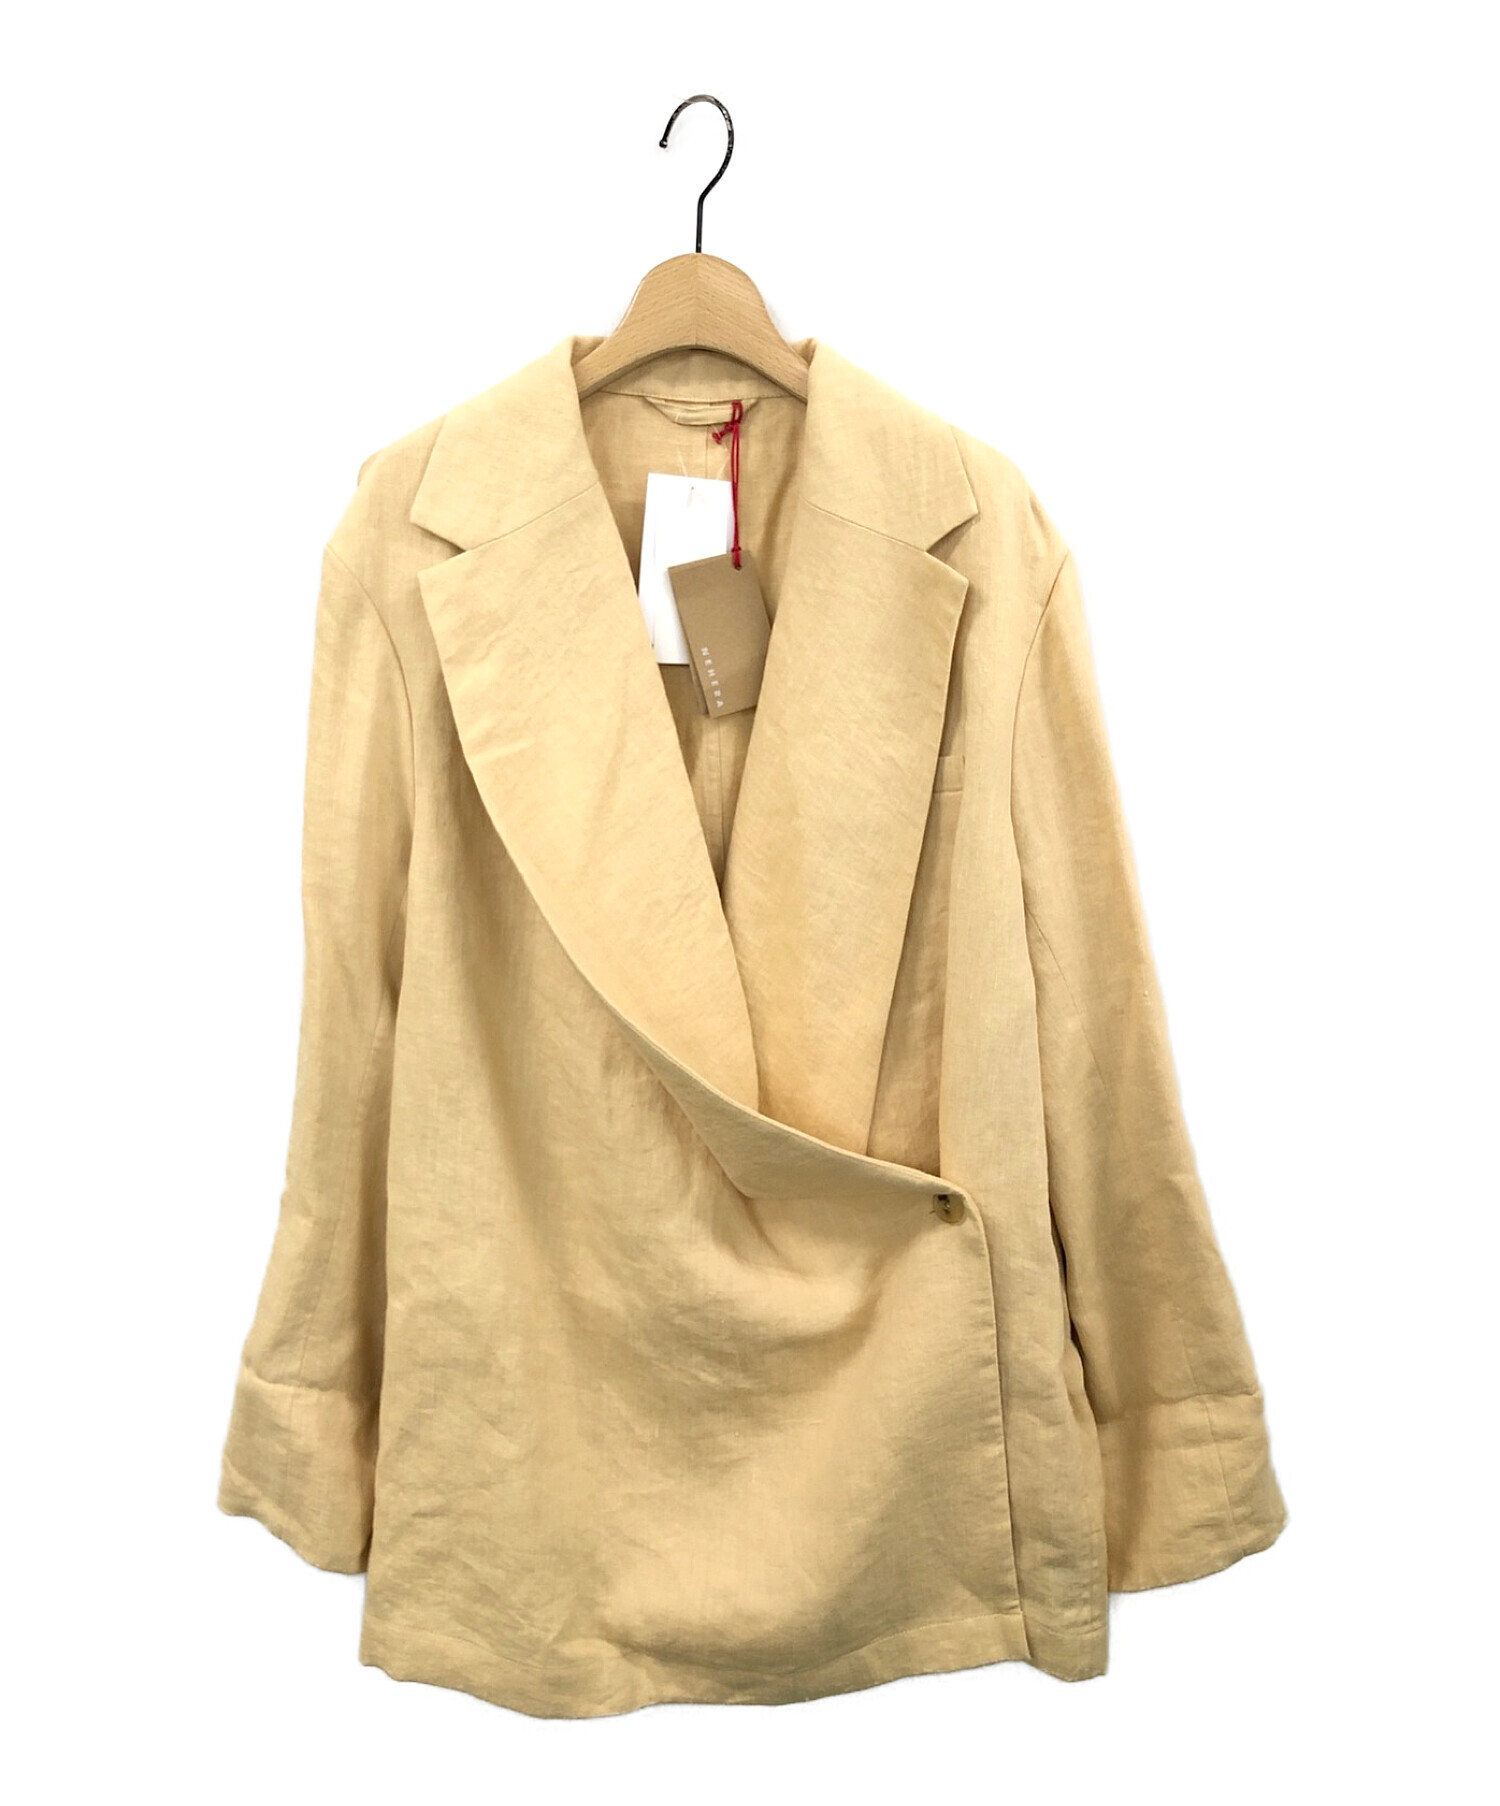 NEHERA (ネヘラ) カシュクールジャケット ライトベージュ サイズ:36 未使用品